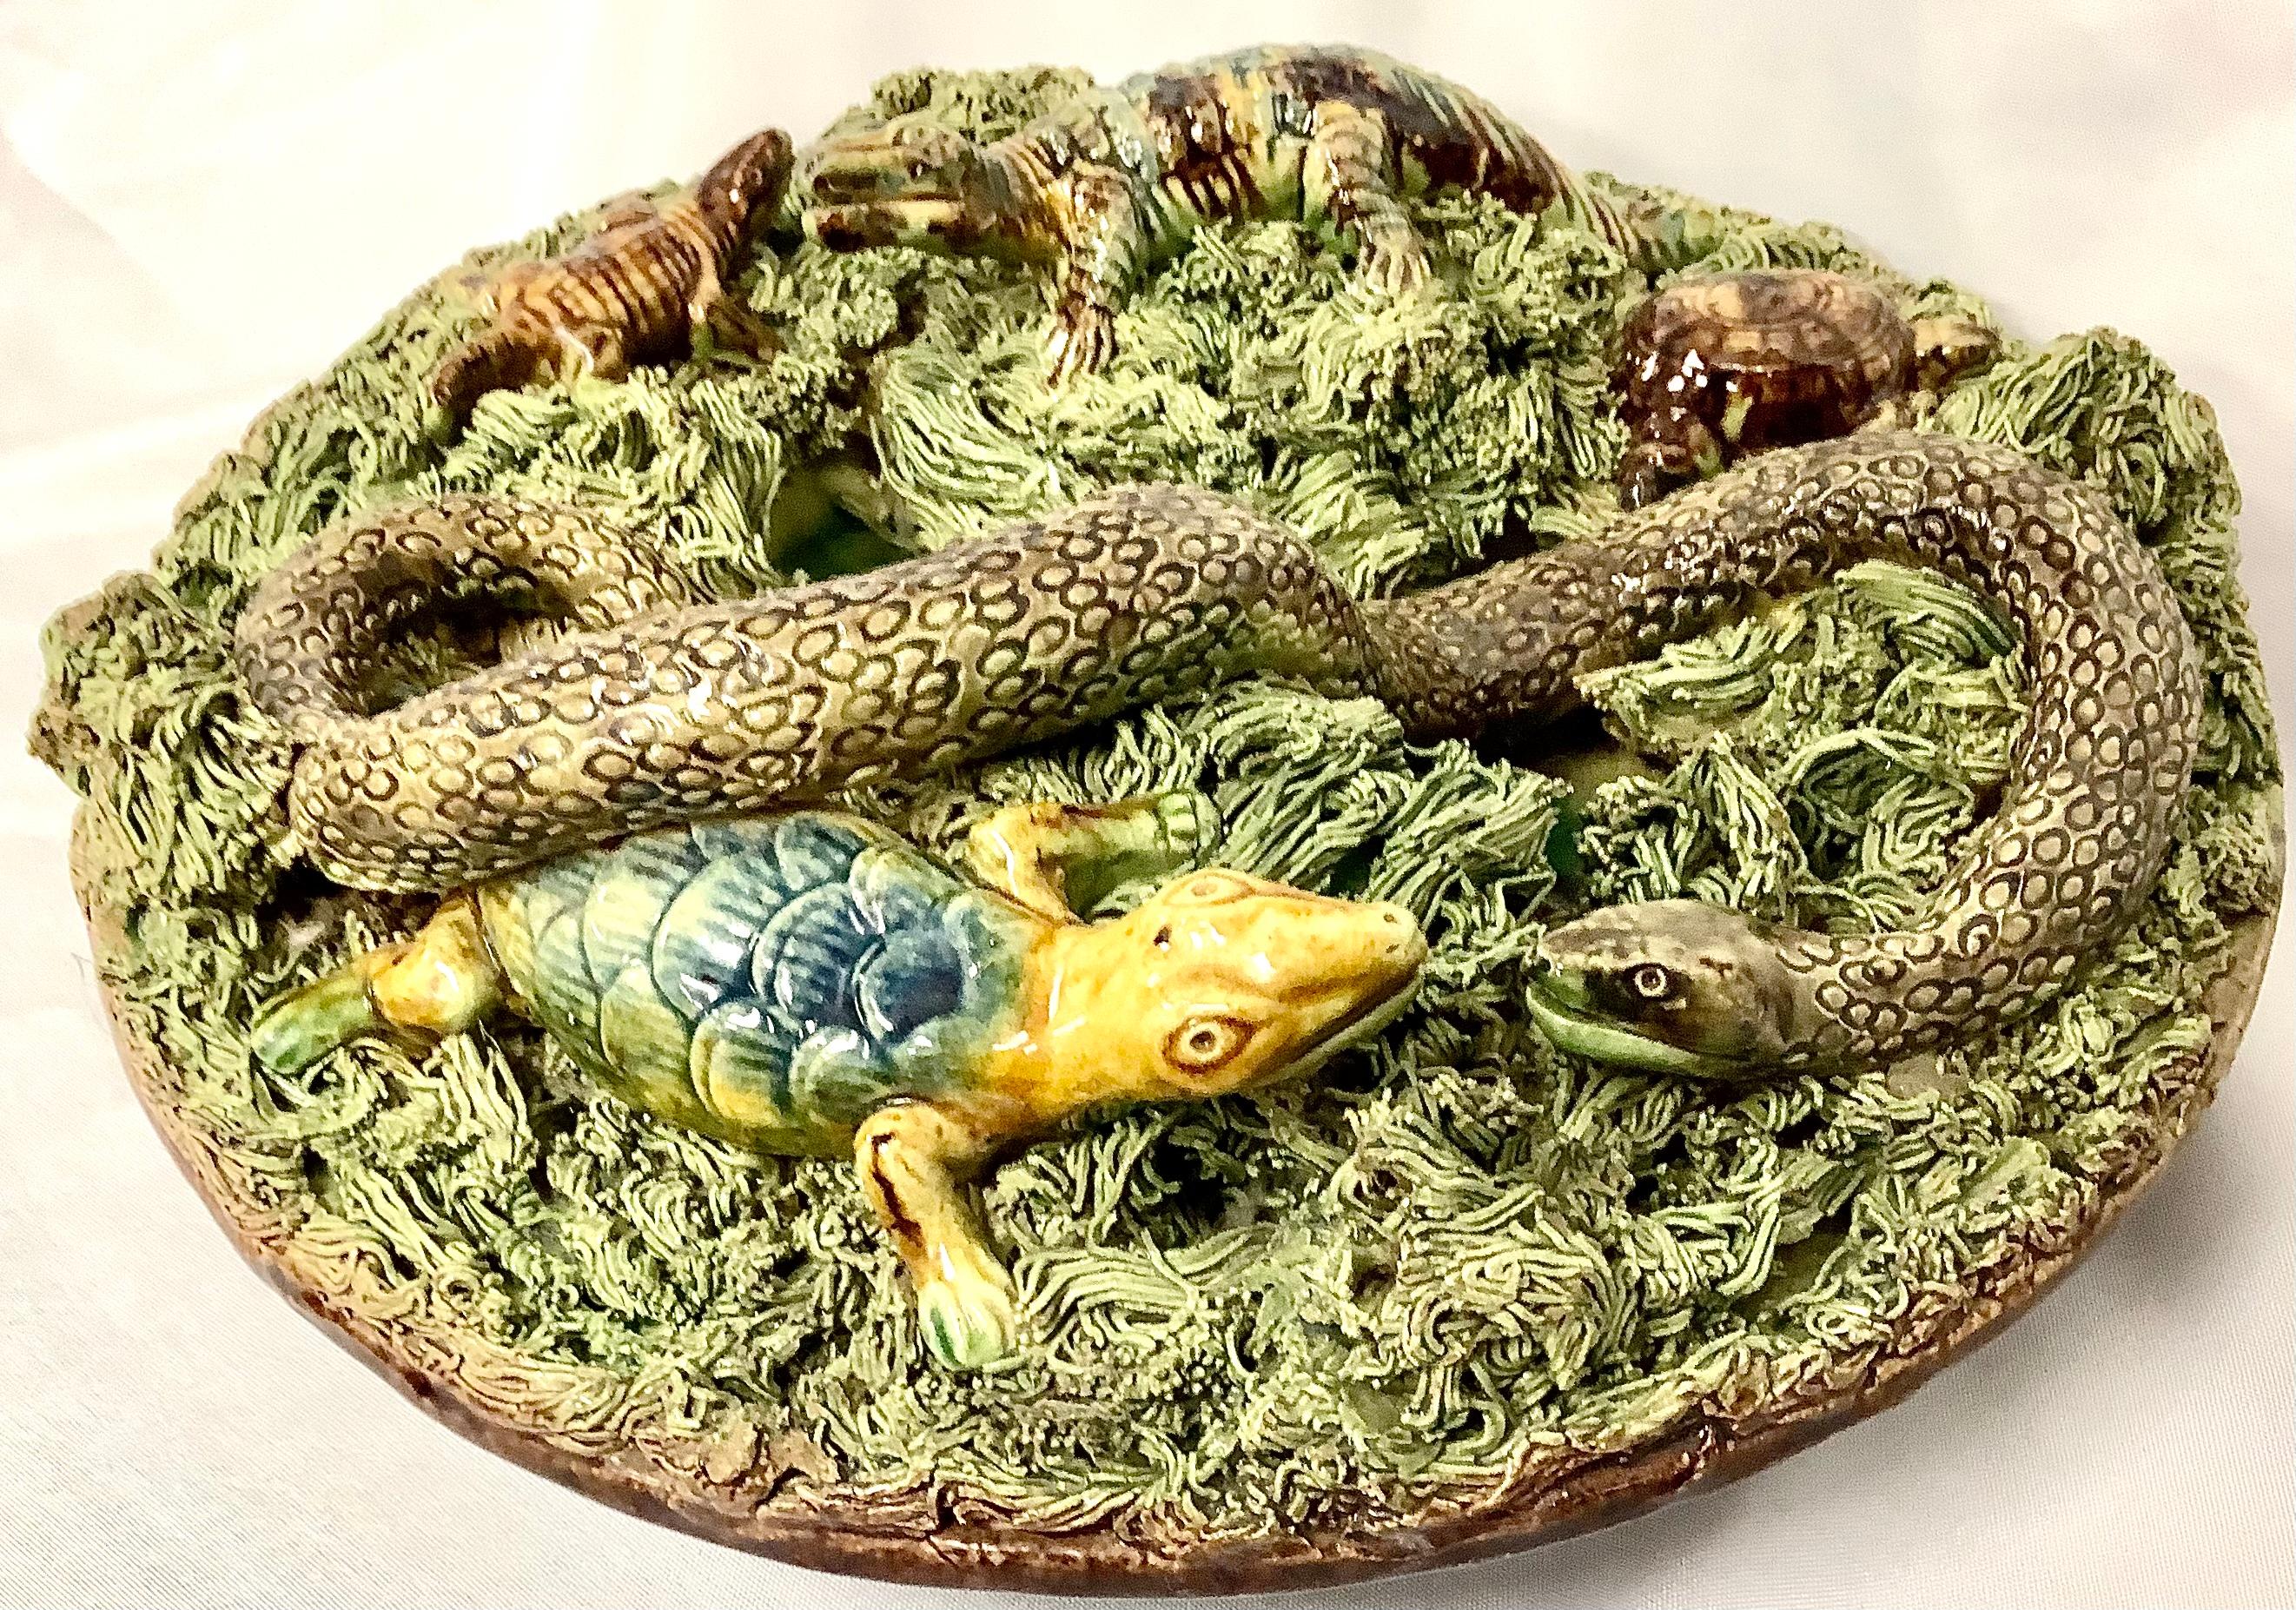 portugiesischer Palissy-Teller des 19. Jahrhunderts mit großer Schlange und mehreren Krokodilen, einer Schildkröte, die alle auf einem Moosbüschel nisten. Auf der Rückseite ist die große Nummer 6 eingeprägt. Die Farben sind Salbeigrün und Braun.